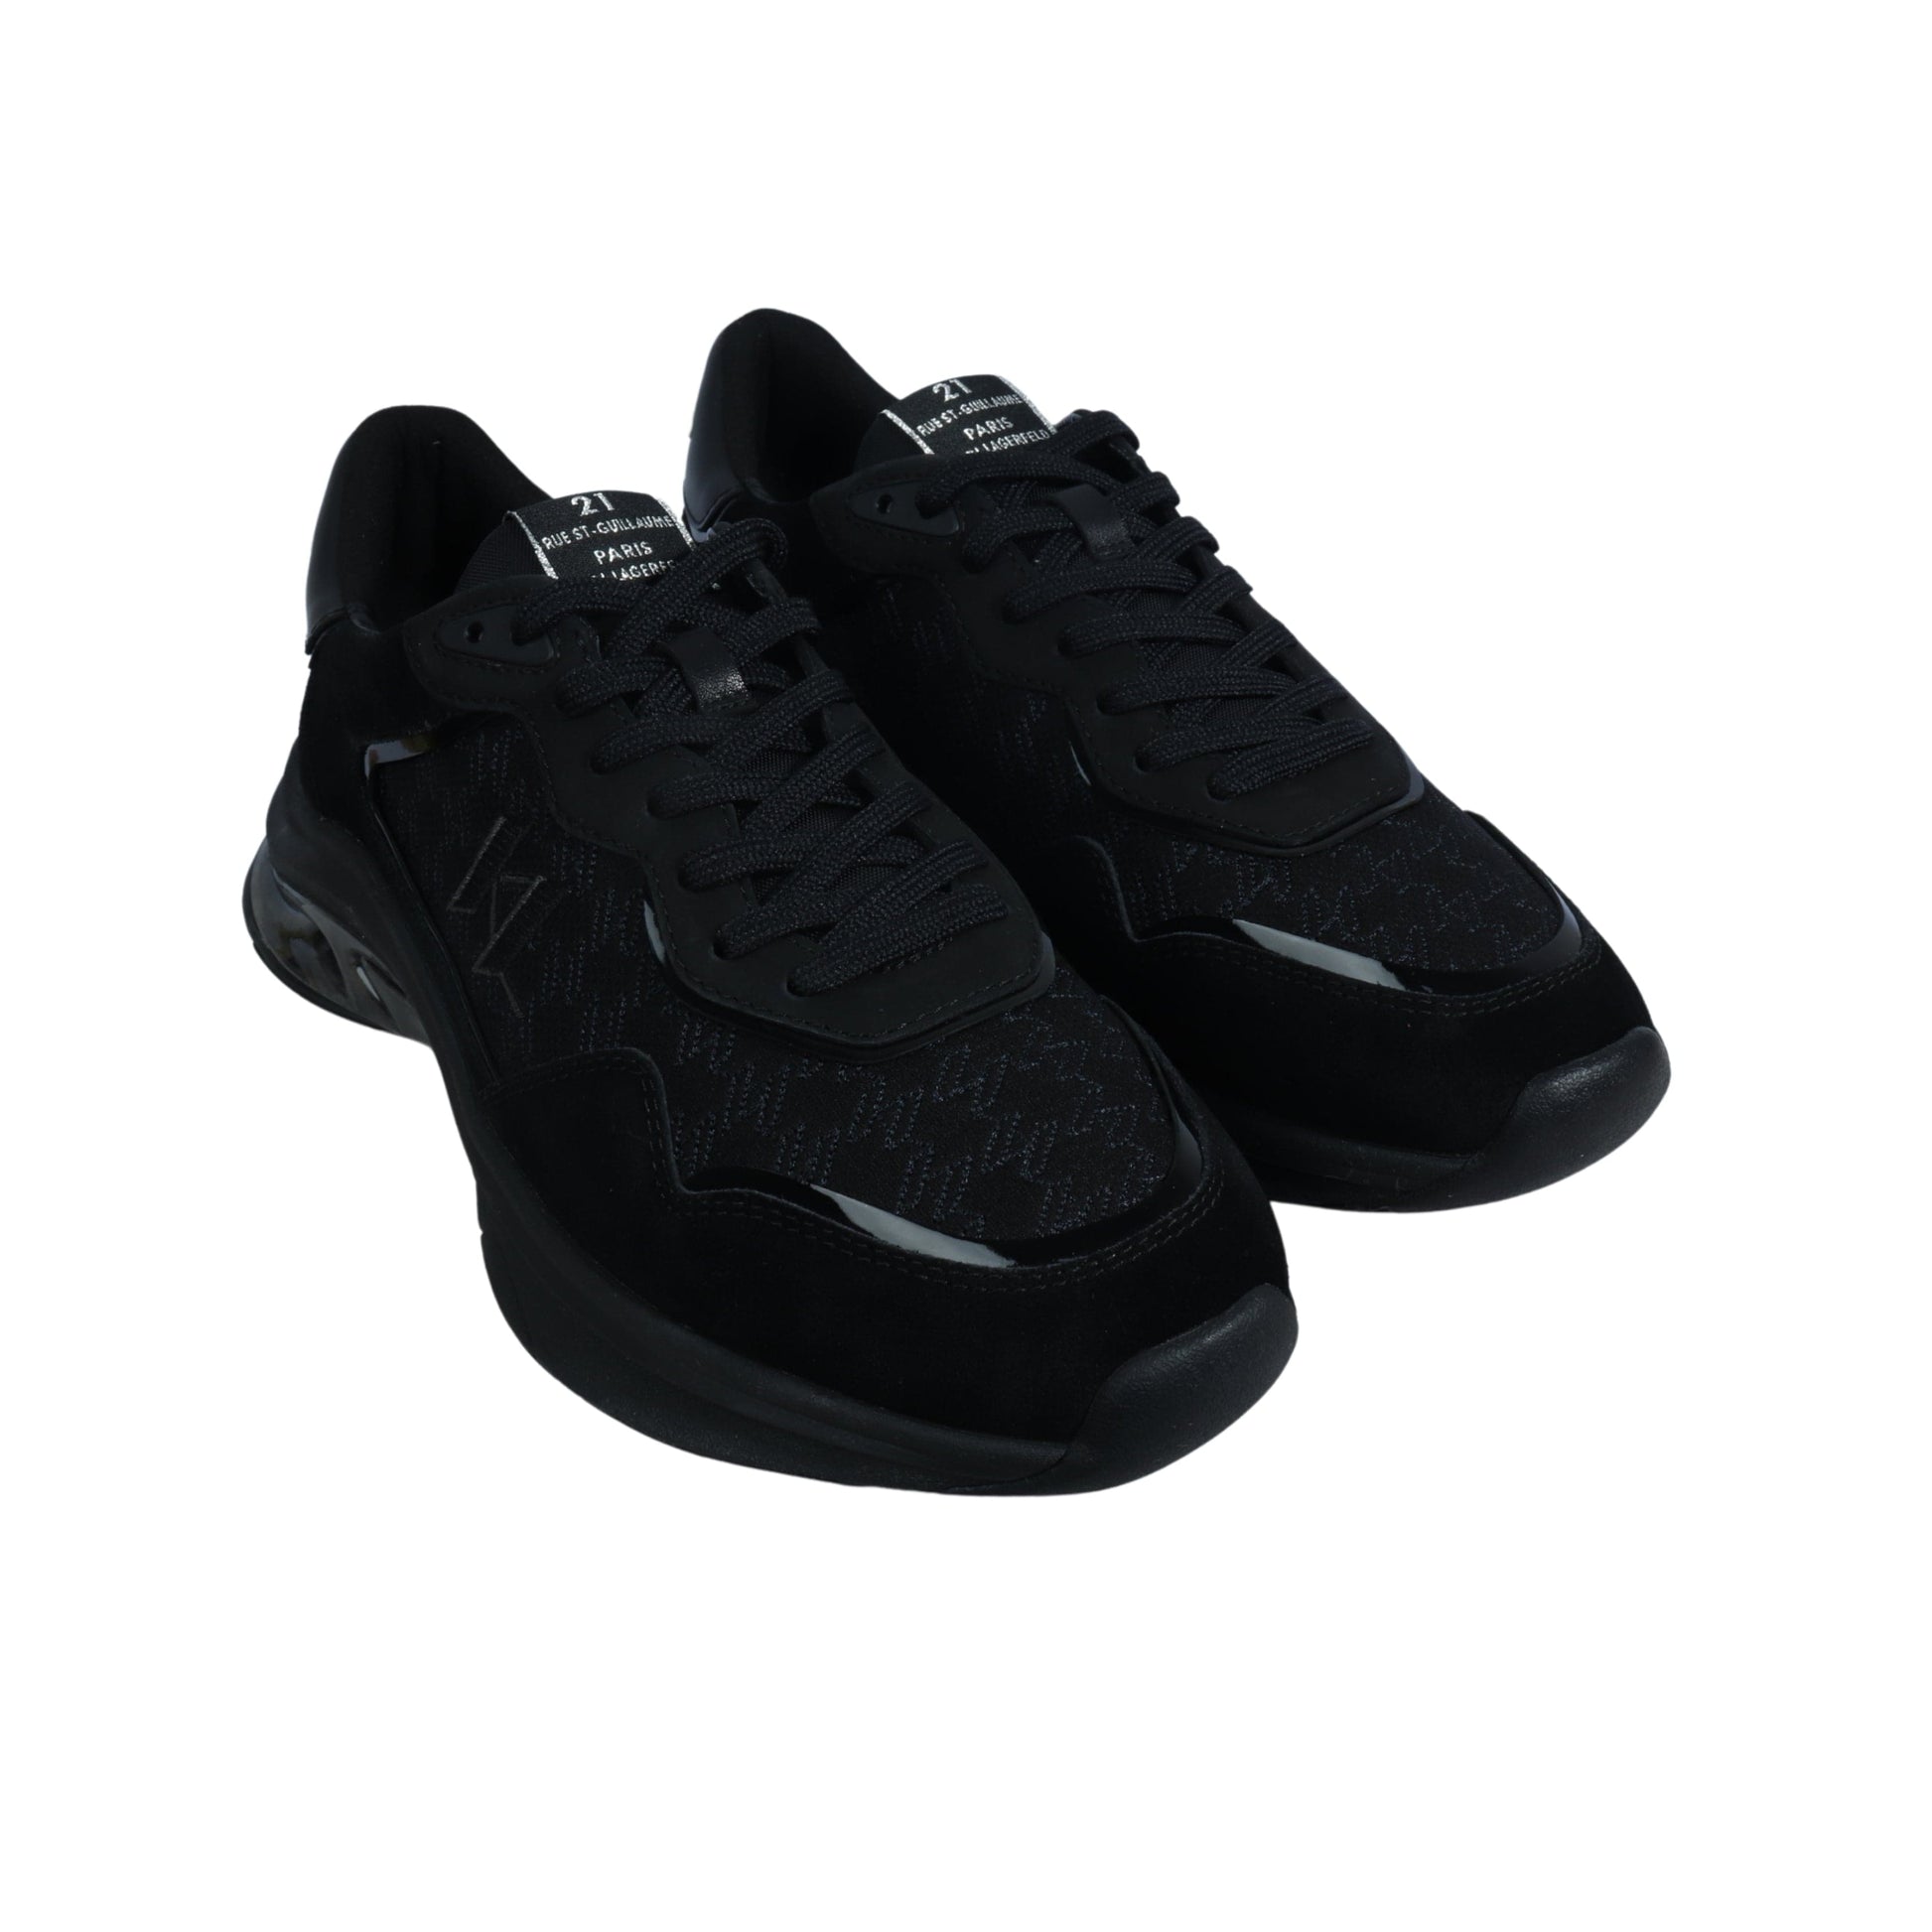 KARL LAGERFELD Mens Shoes 43 / Black KARL LAGERFELD - Low-top sneakers